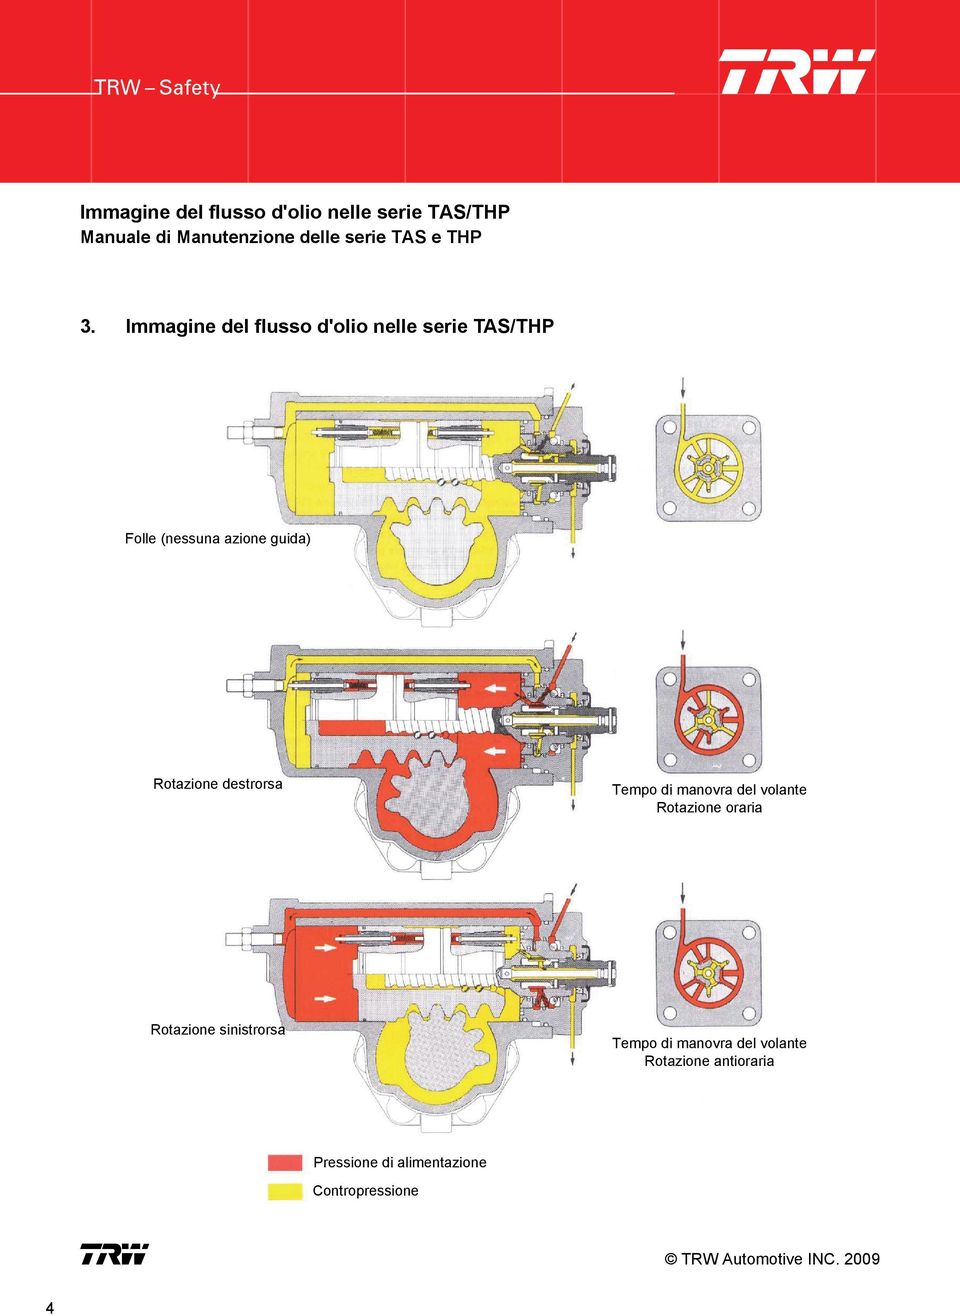 Immagine del flusso d'olio nelle serie TAS/THP Folle (nessuna azione guida) Rotazione